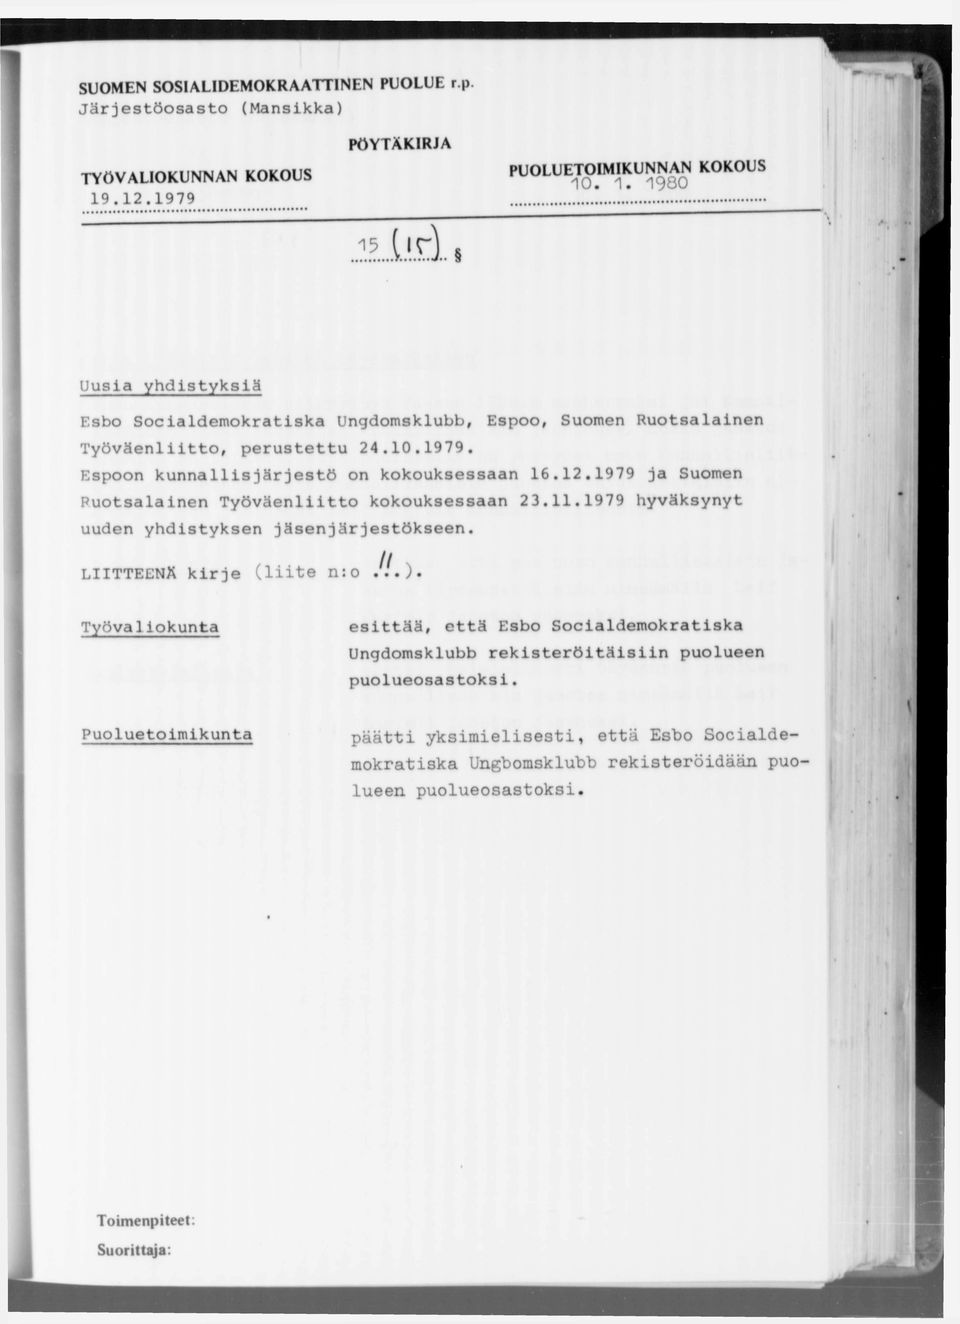 12.1979 ja Suomen Ruotsalainen Työväenliitto kokouksessaan 23.11.1979 hyväksynyt uuden yhdistyksen jäsenjärjestökseen. LIITTEENÄ kirje (liite n:o Jl.).